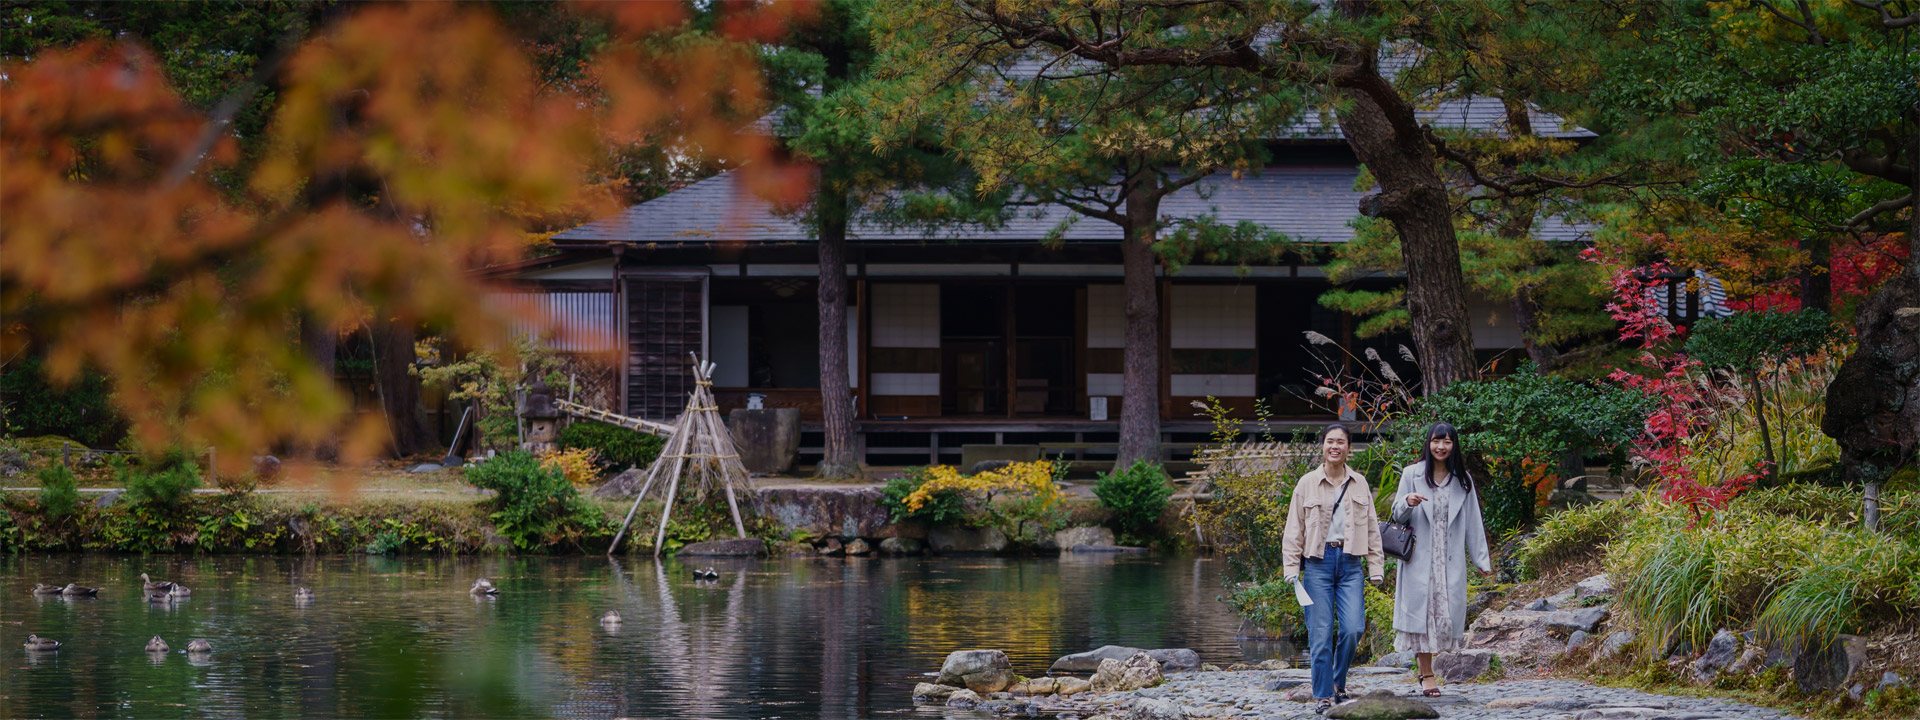 感受季节的绝景和体验日本特色文化之旅